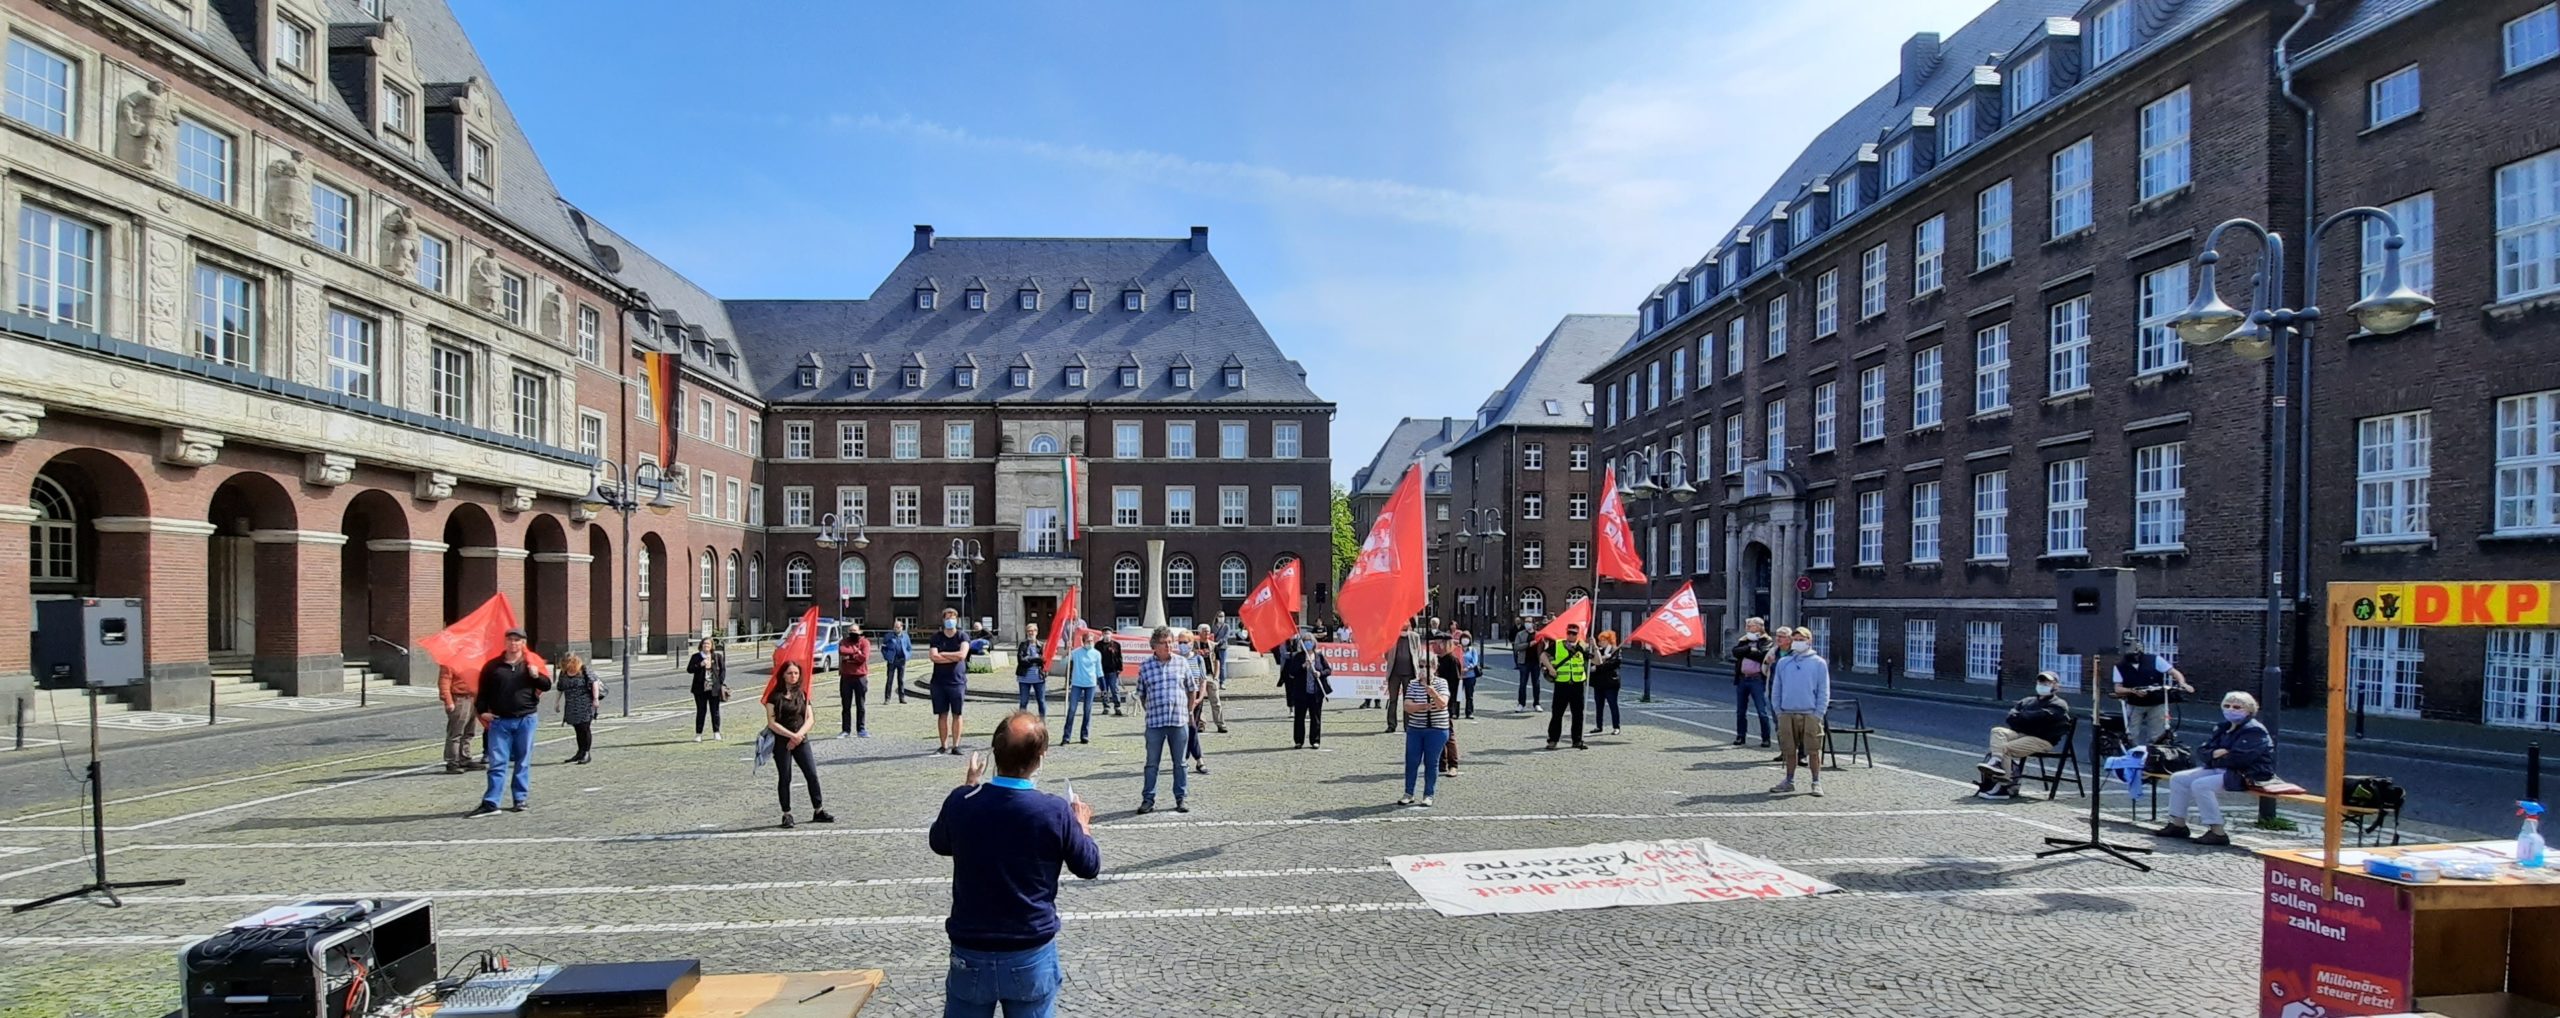 Bottrop scaled - Friedensbotschaft - Antifaschismus, Tag der Befreiung - Im Bild